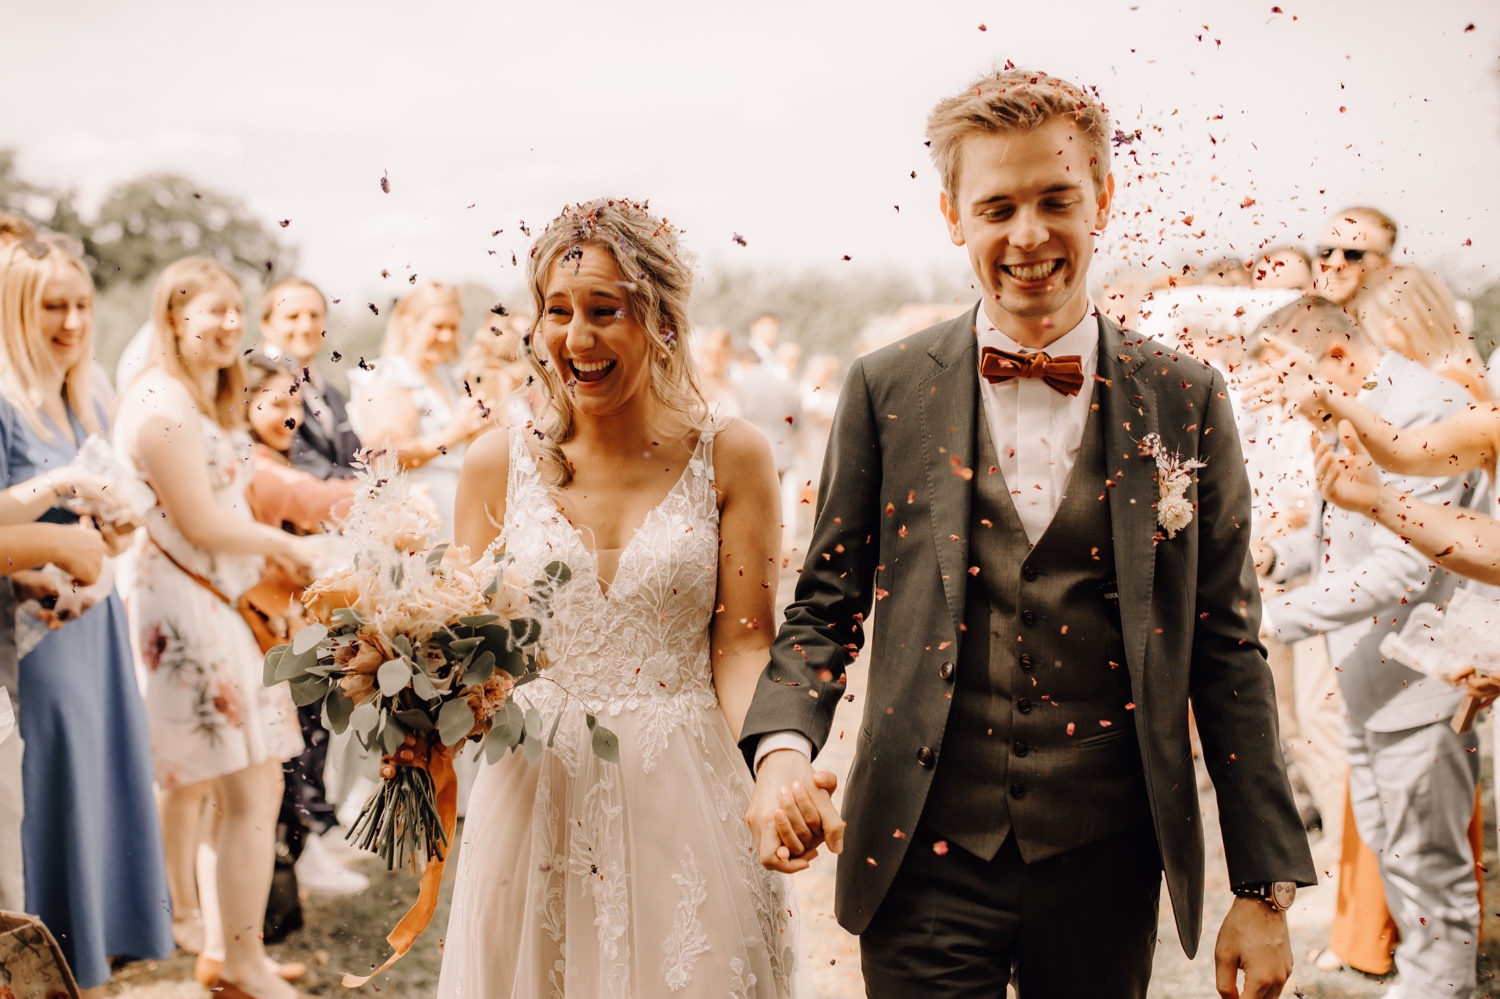 Huwelijksfotograaf Limburg - bruidspaar wandelt gangpad ceremonie uit